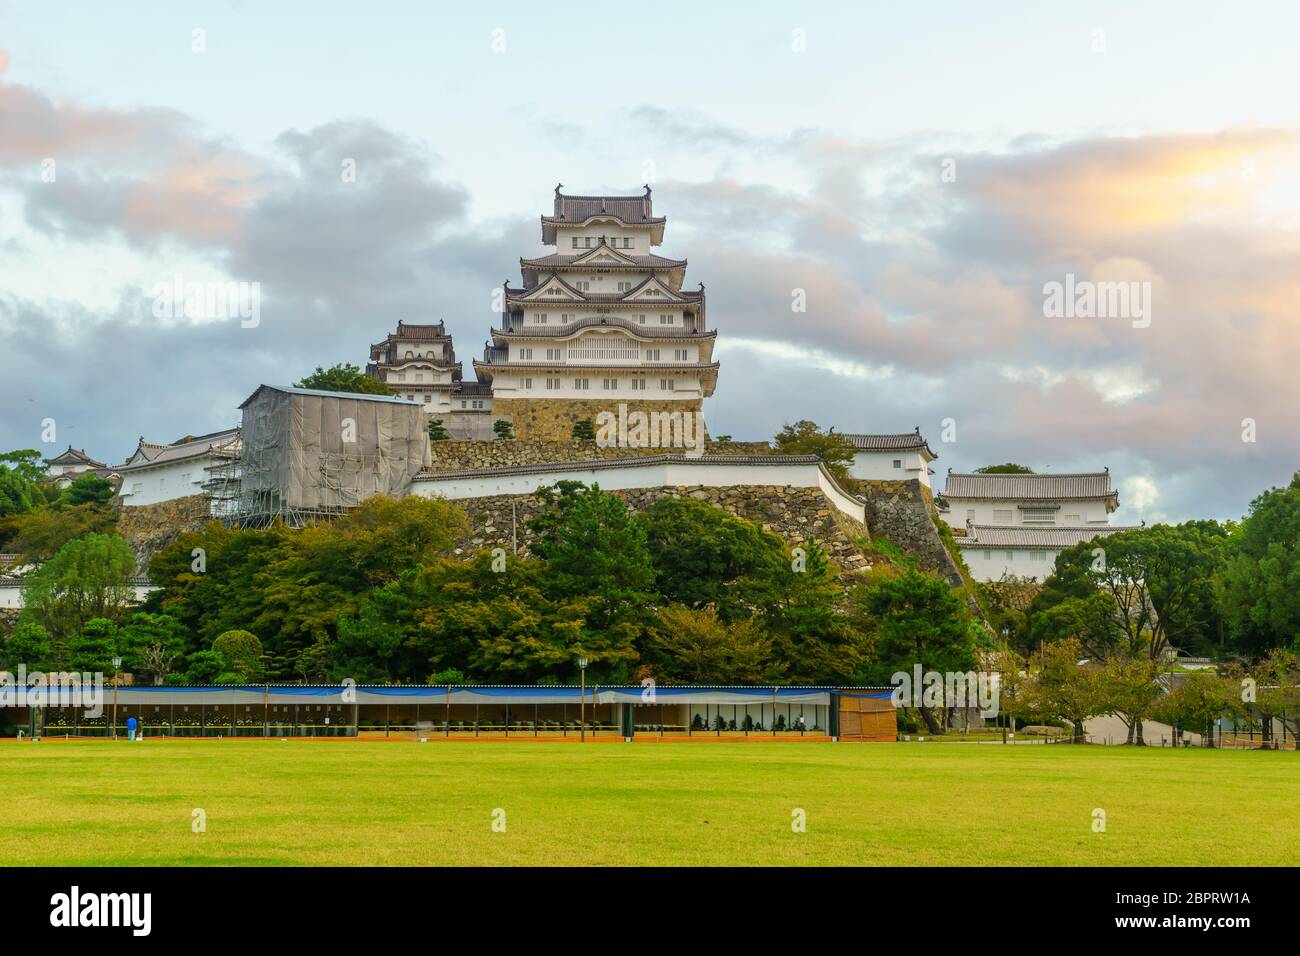 Lever du soleil sur le château de Himeji, daté 1333, dans la ville de Himeji, préfecture de Hyogo, Japon Banque D'Images